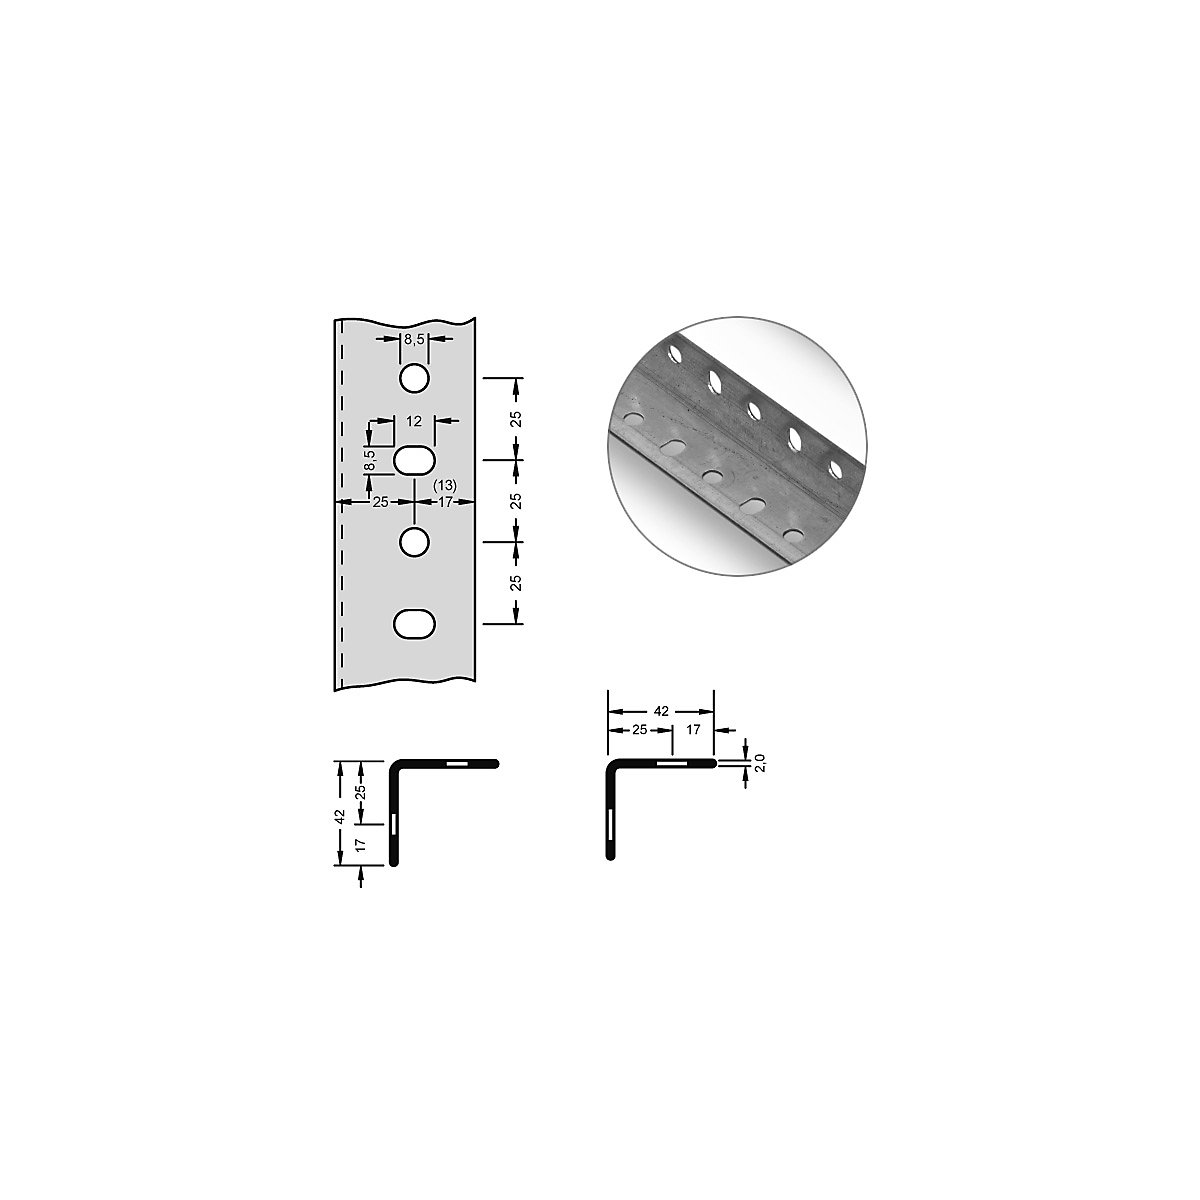 hofe – Stalowy profil narożny do systemu modułowego, 42 x 42 x 2 mm, dł. 3 m, ocynkowanie, opak. 6 szt.